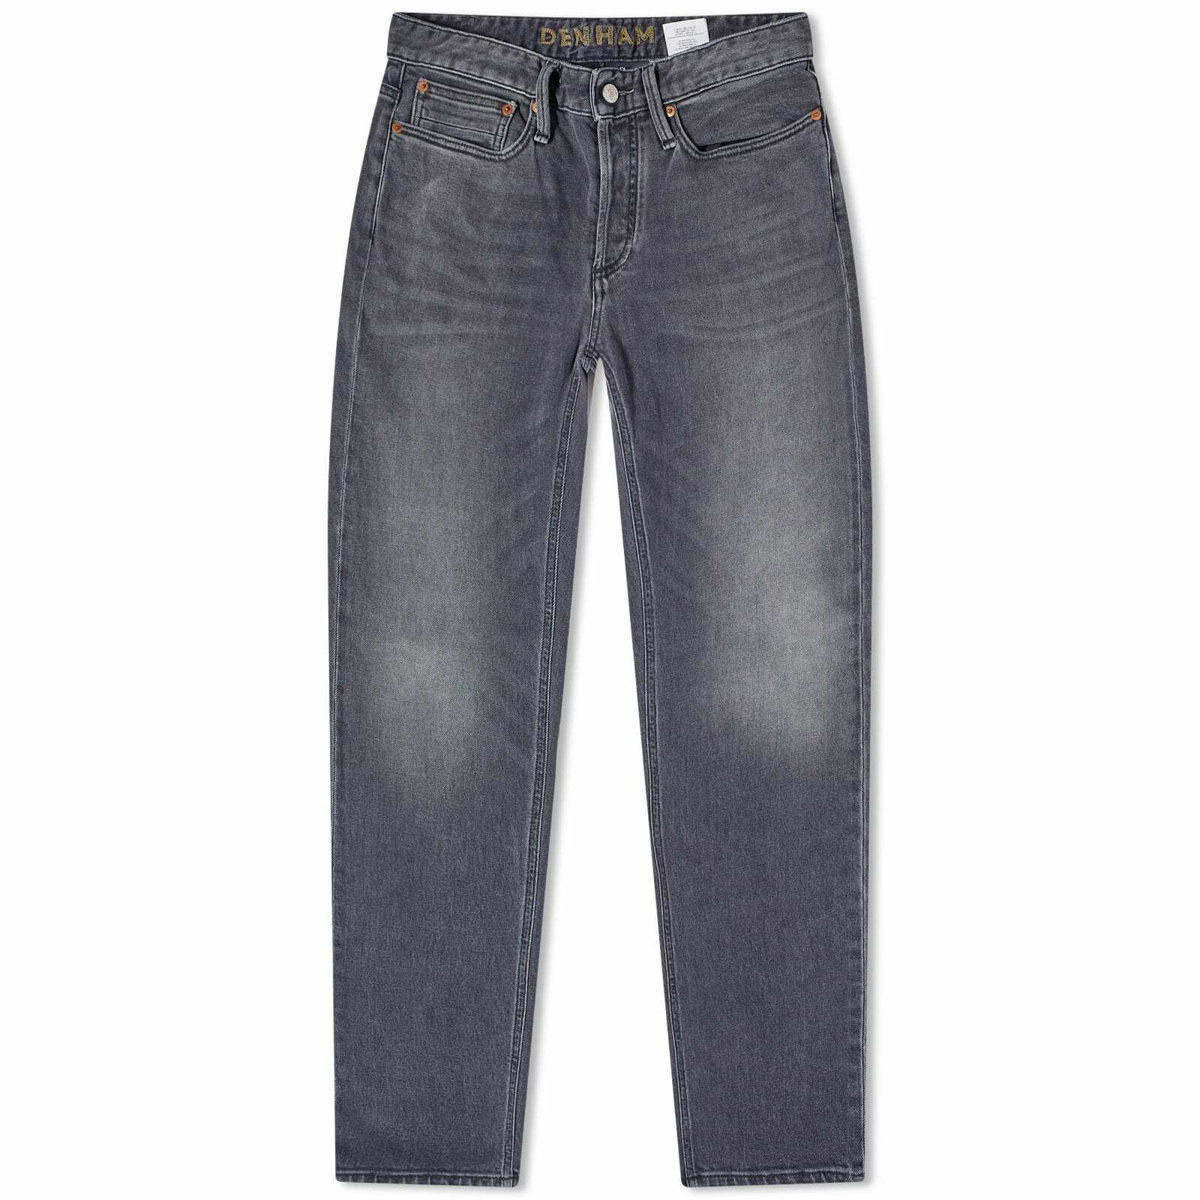 Denham Men's Razor Slim Fit Jeans in Authentic Wash Grey Denham